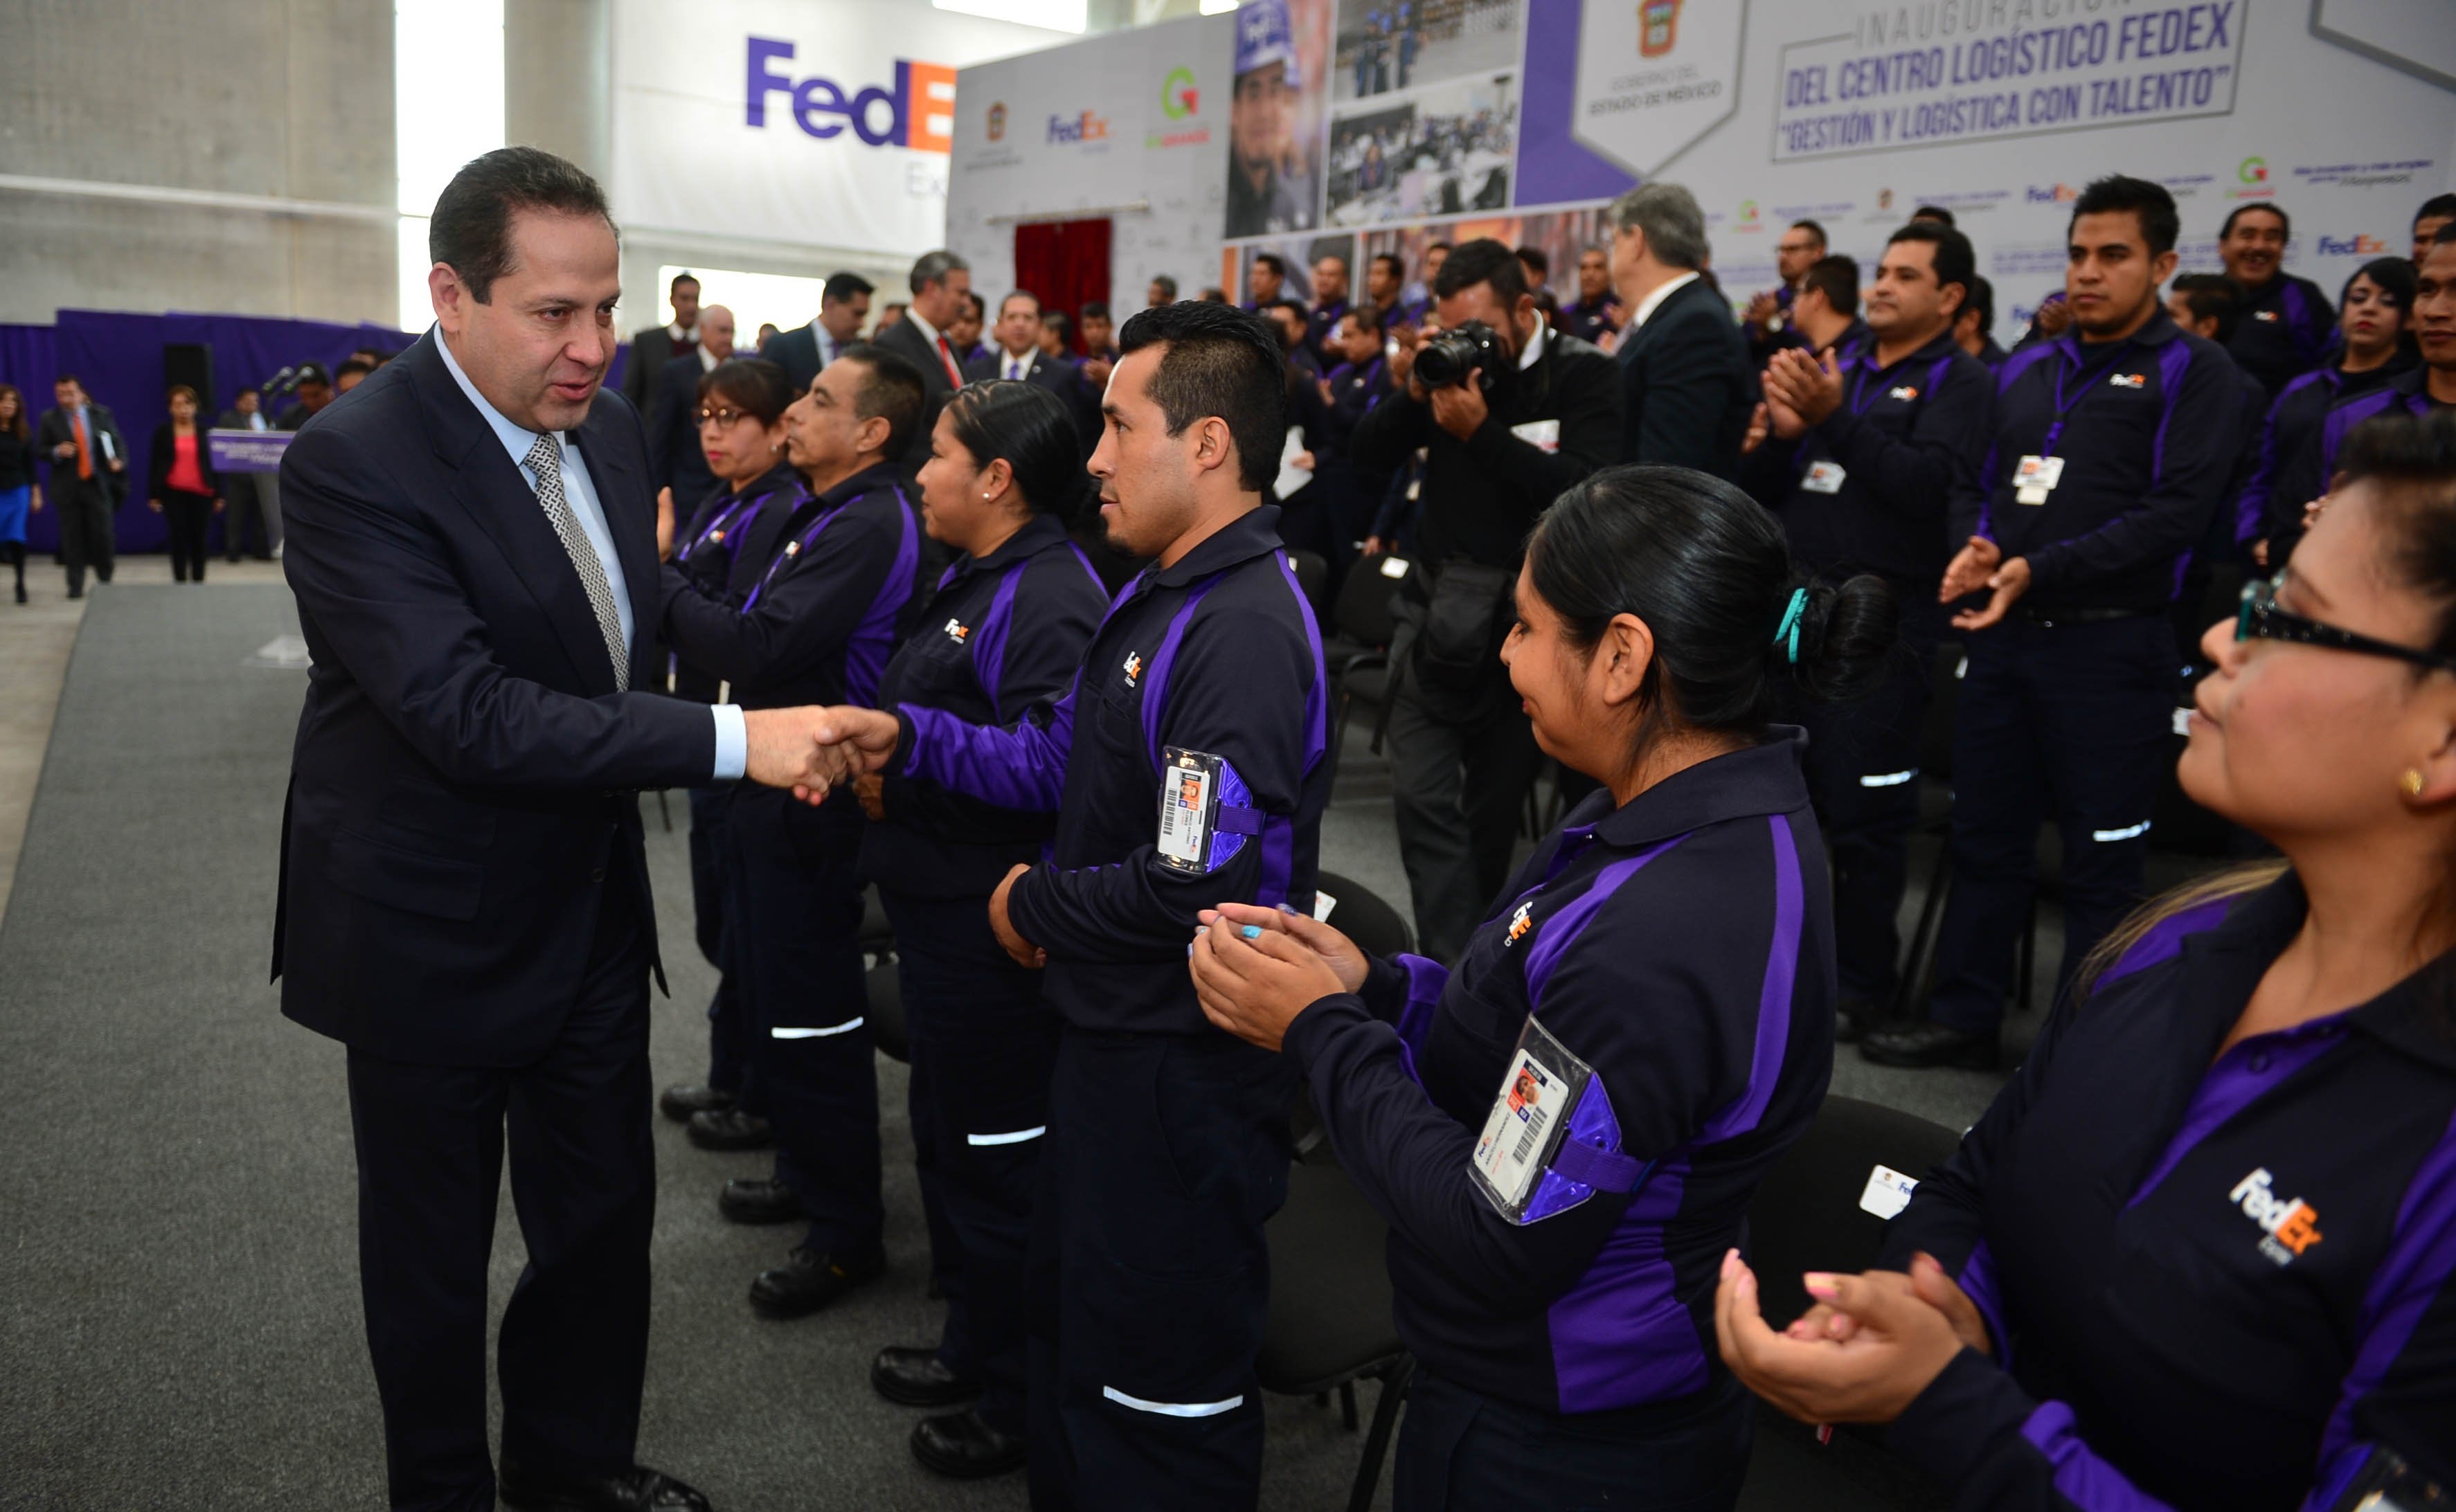 Fedex inaugura su centro logístico más grande de Latinoamérica en el Edomex